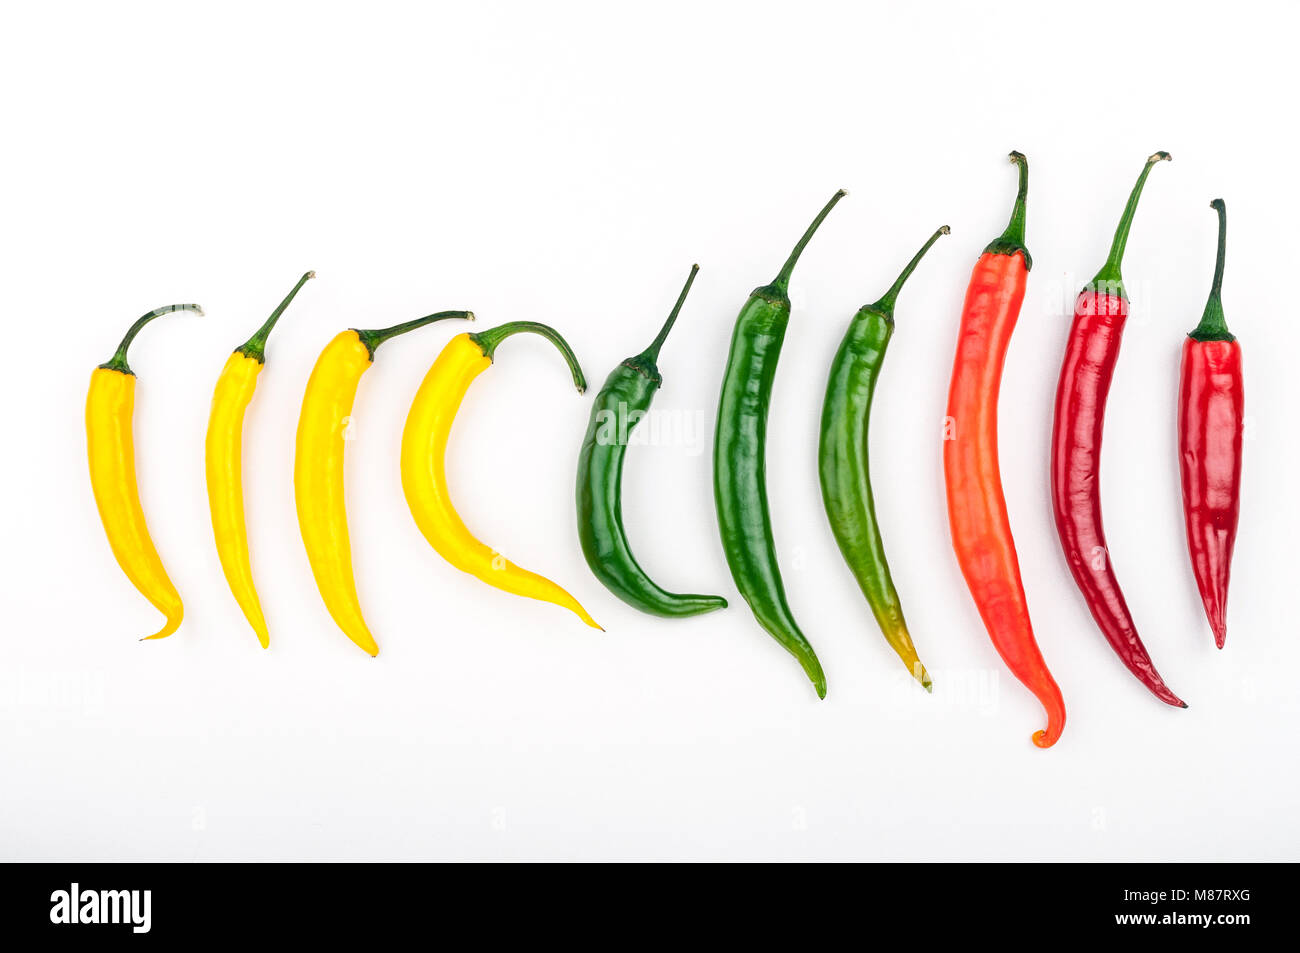 Vielzahl von Chili peppers. Rote, grüne und gelbe Paprika Pfeffer auf weißem Hintergrund der Ansicht von oben Stockfoto